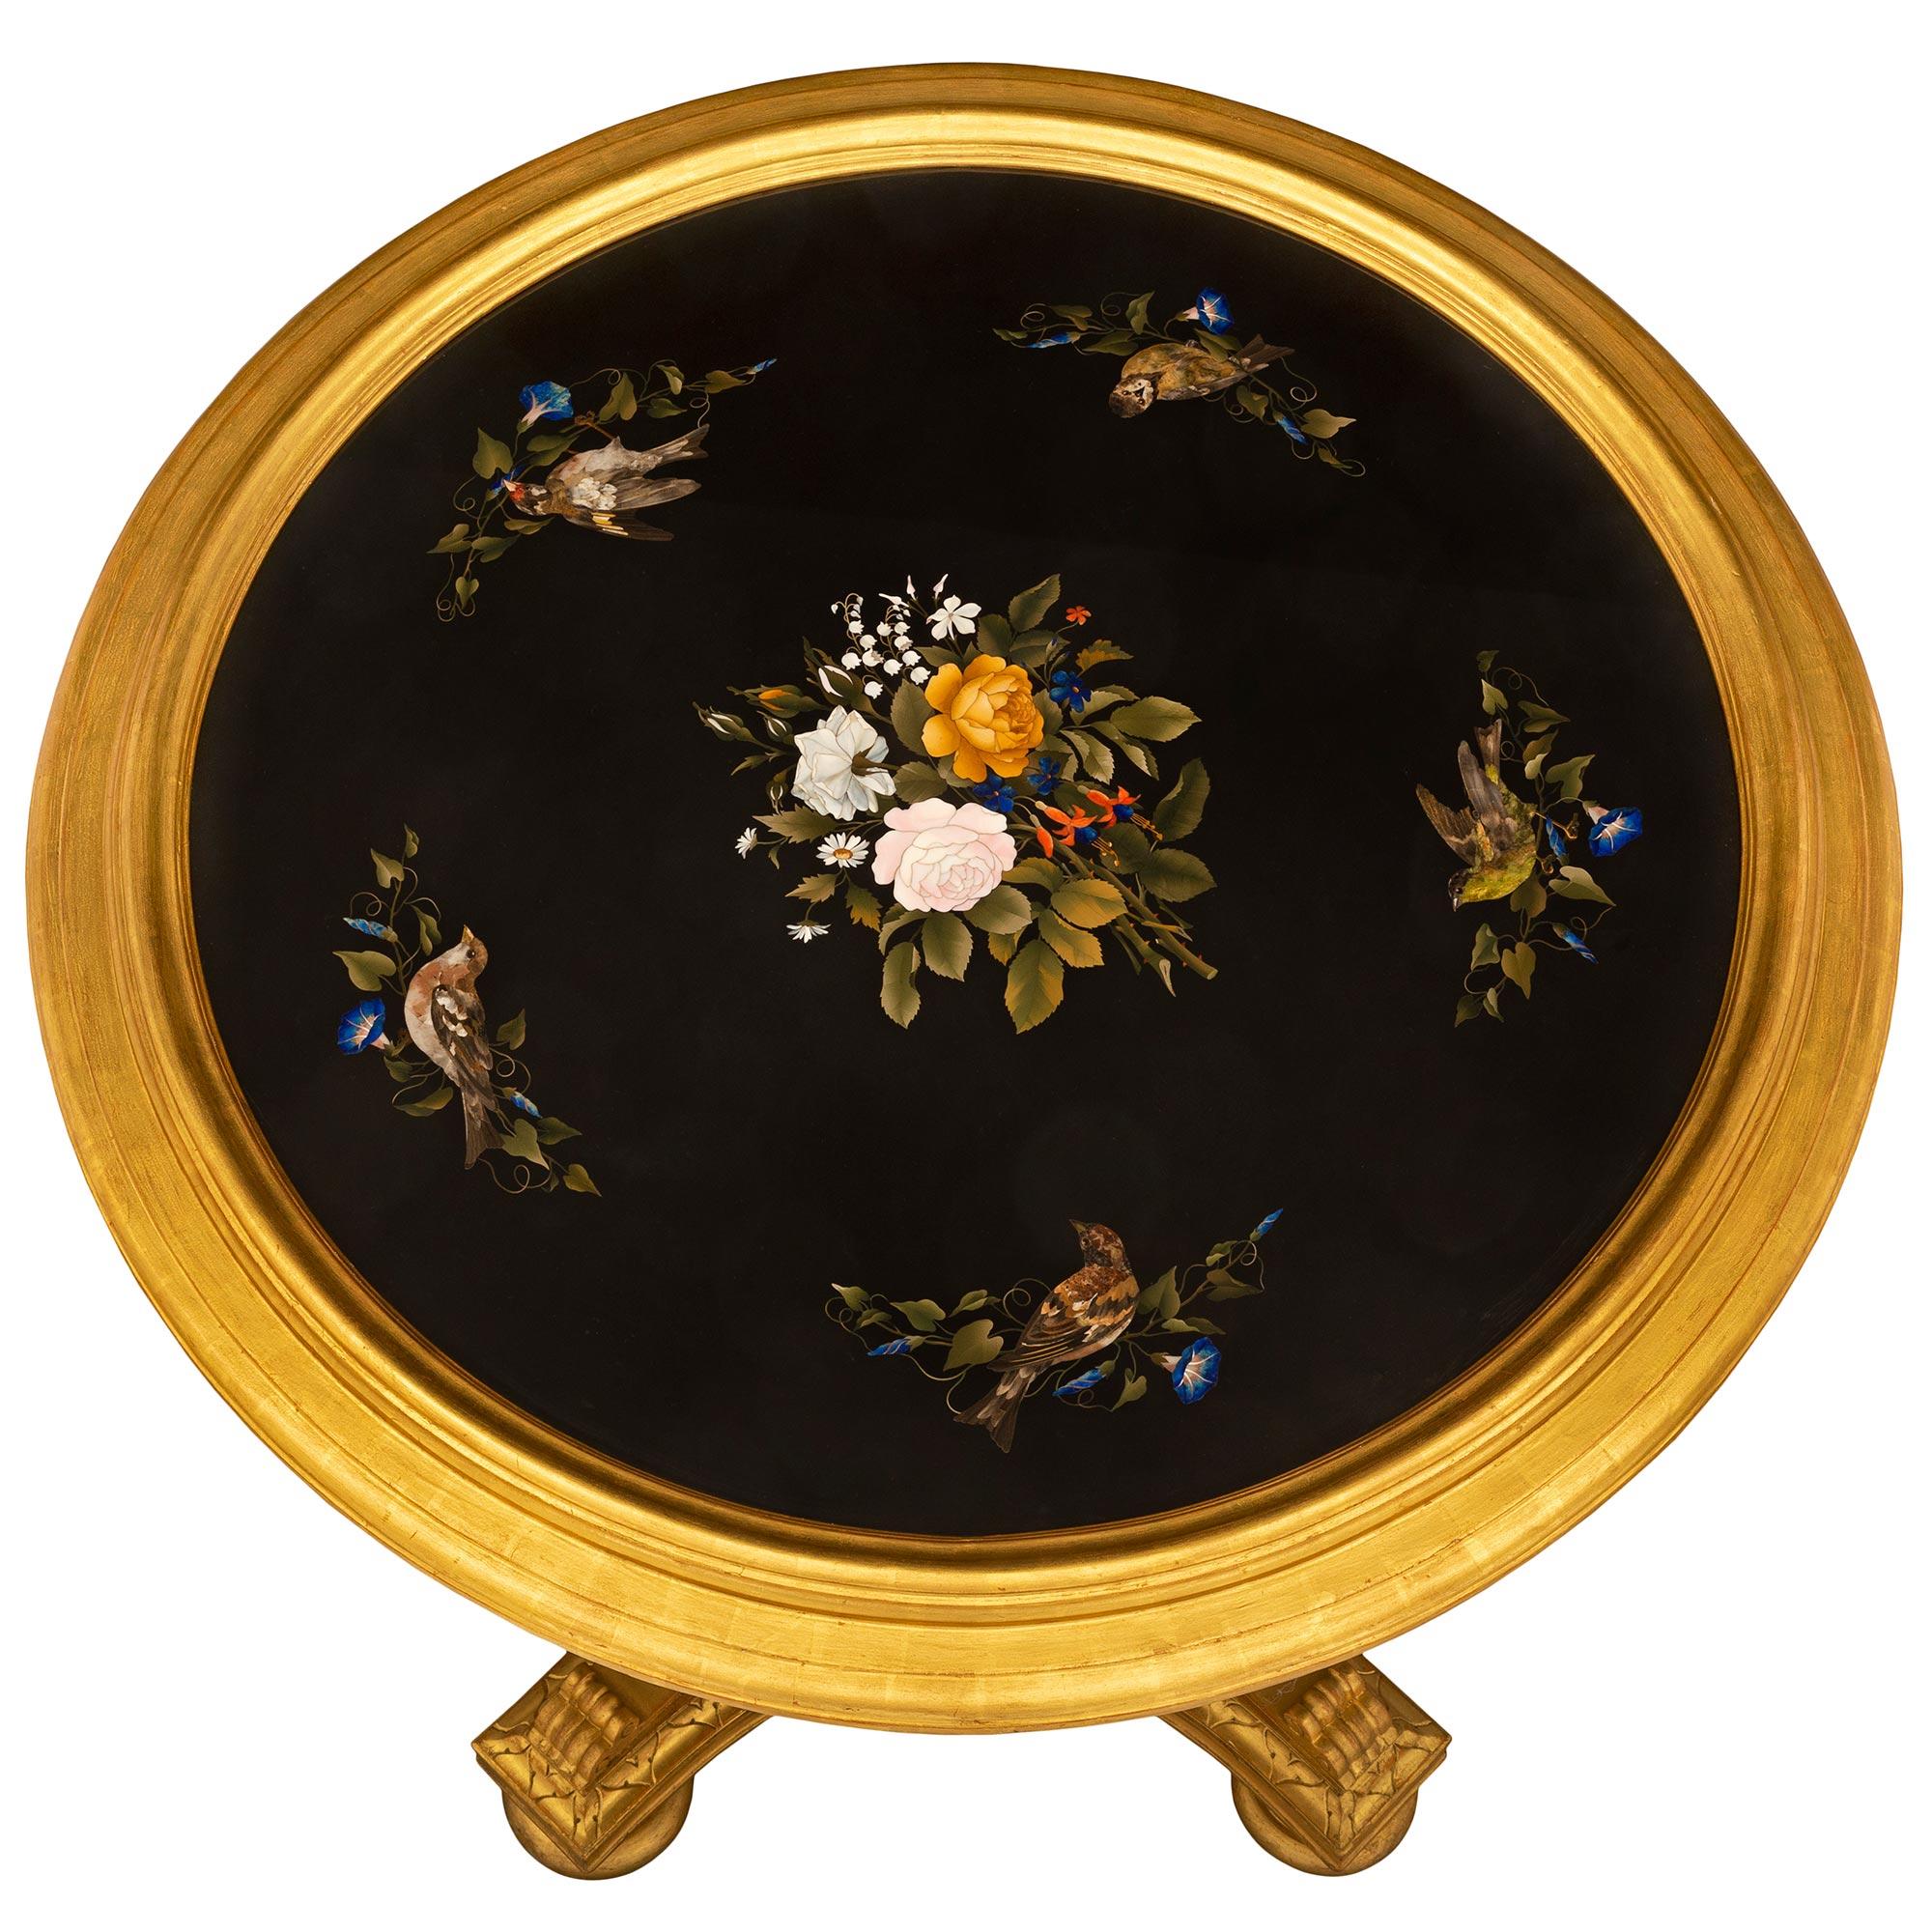 Superbe table d'appoint en bois doré et en pietra dura de très grande qualité, datant du 19e siècle, en provenance de Florentine. La table circulaire est surélevée par une belle base carrée aux côtés concaves et aux angles coupés, avec des pieds